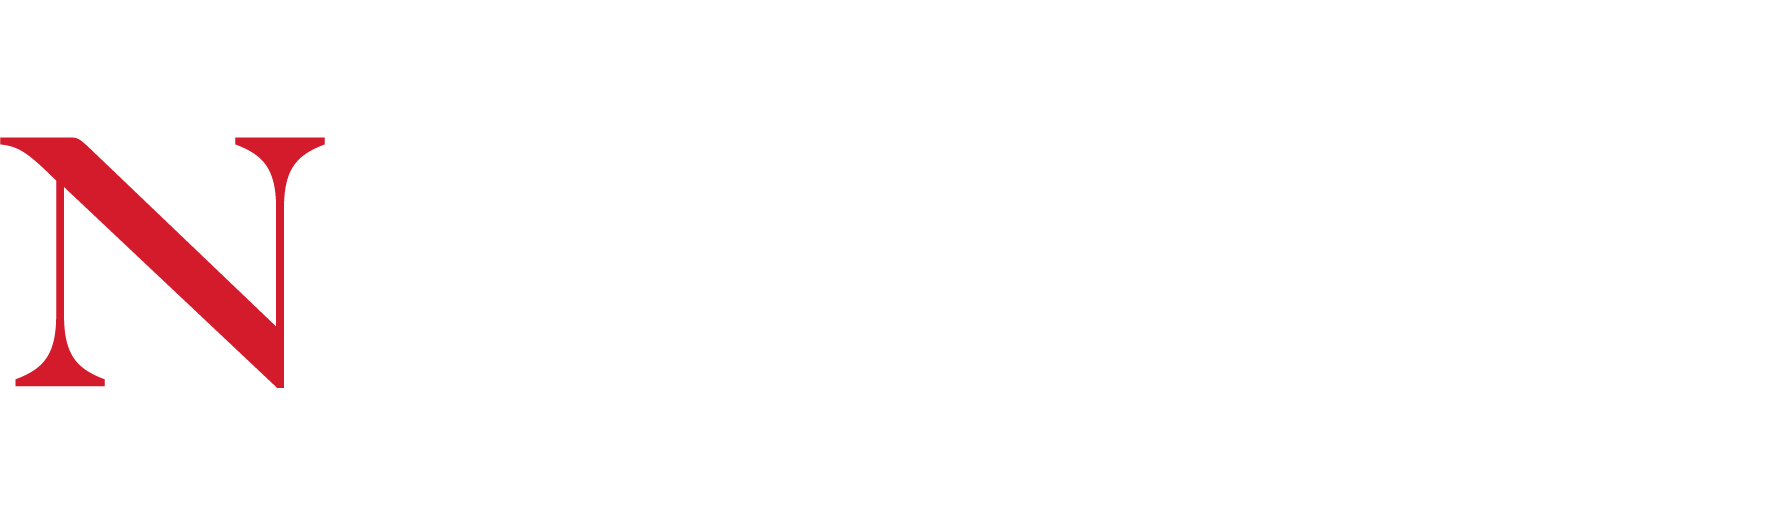 Northeastern University Seal